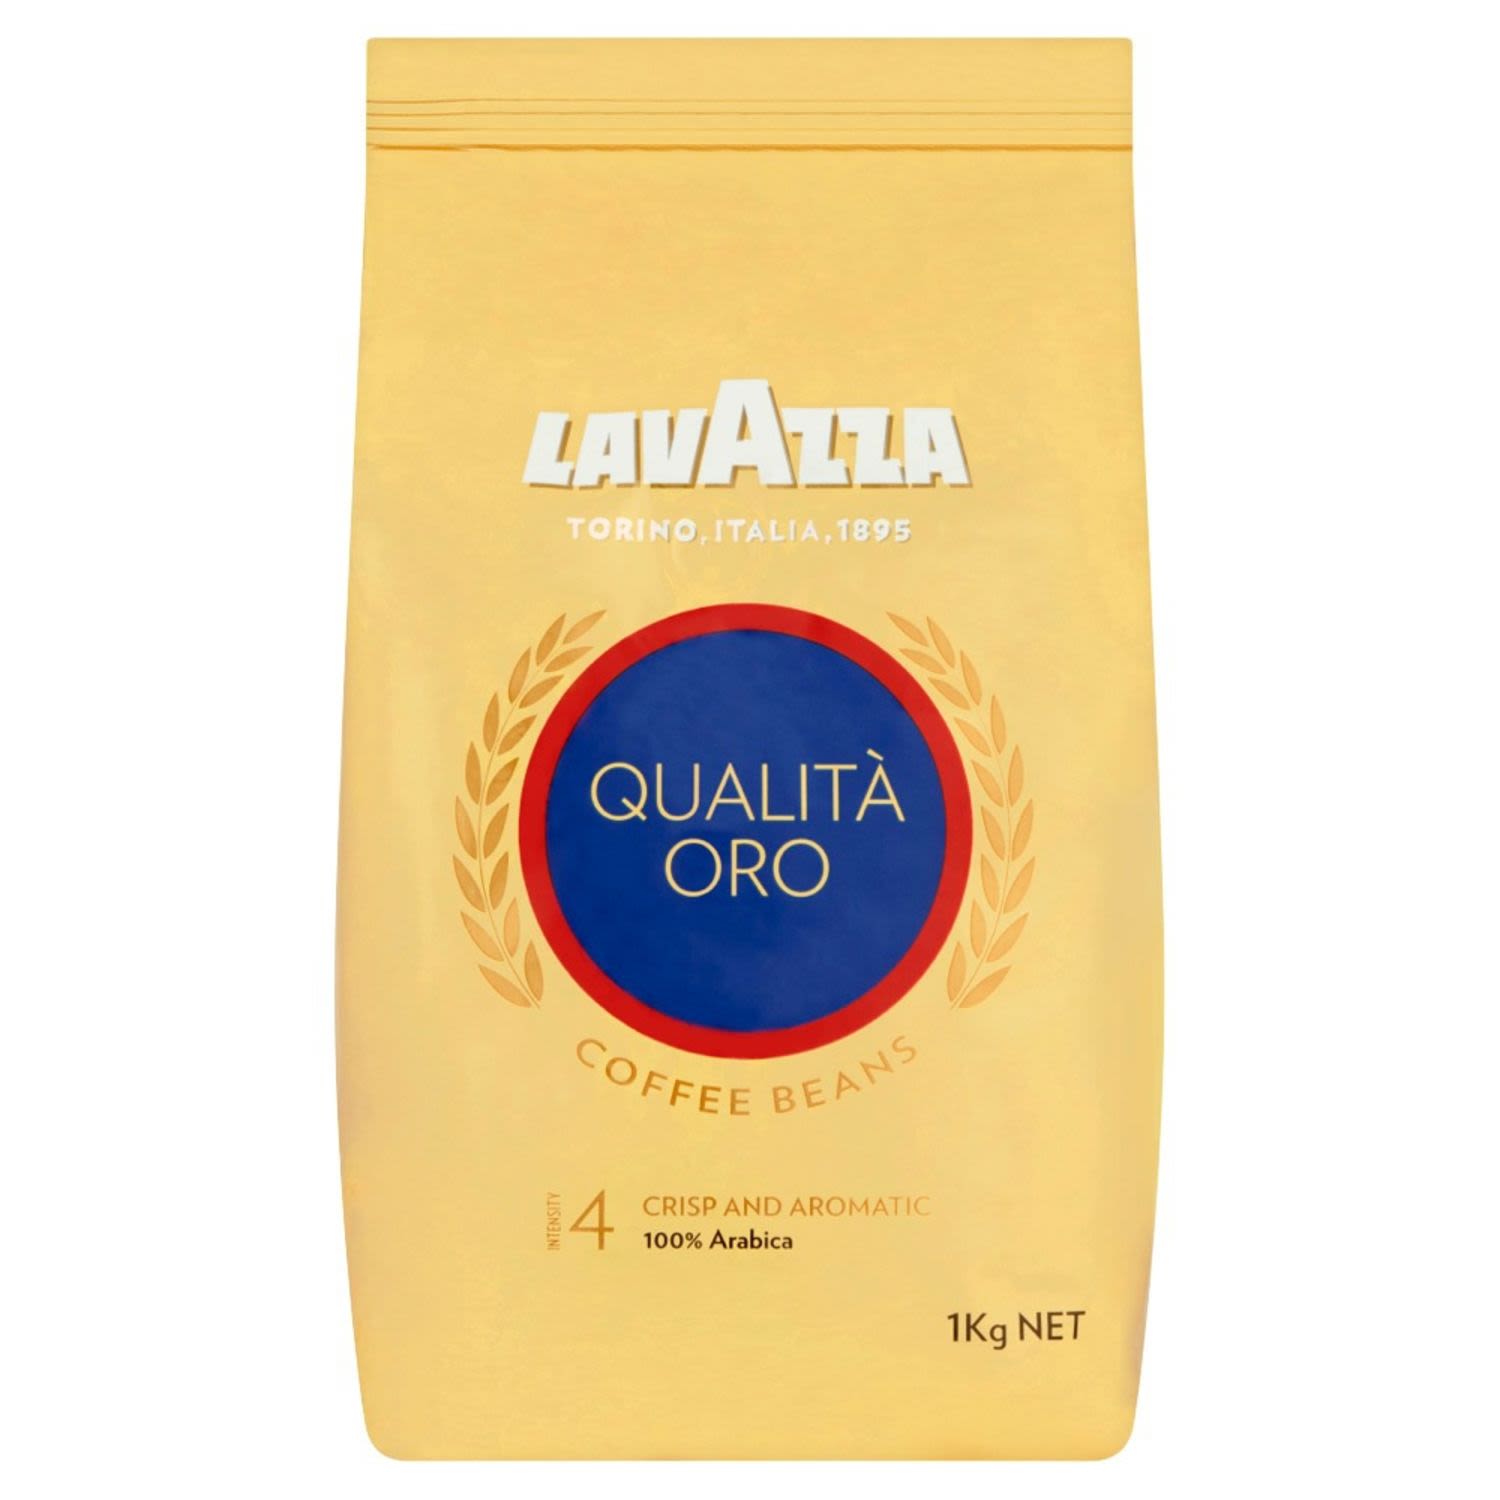 Lavazza Qualita Oro Coffee Beans, 1 Kilogram